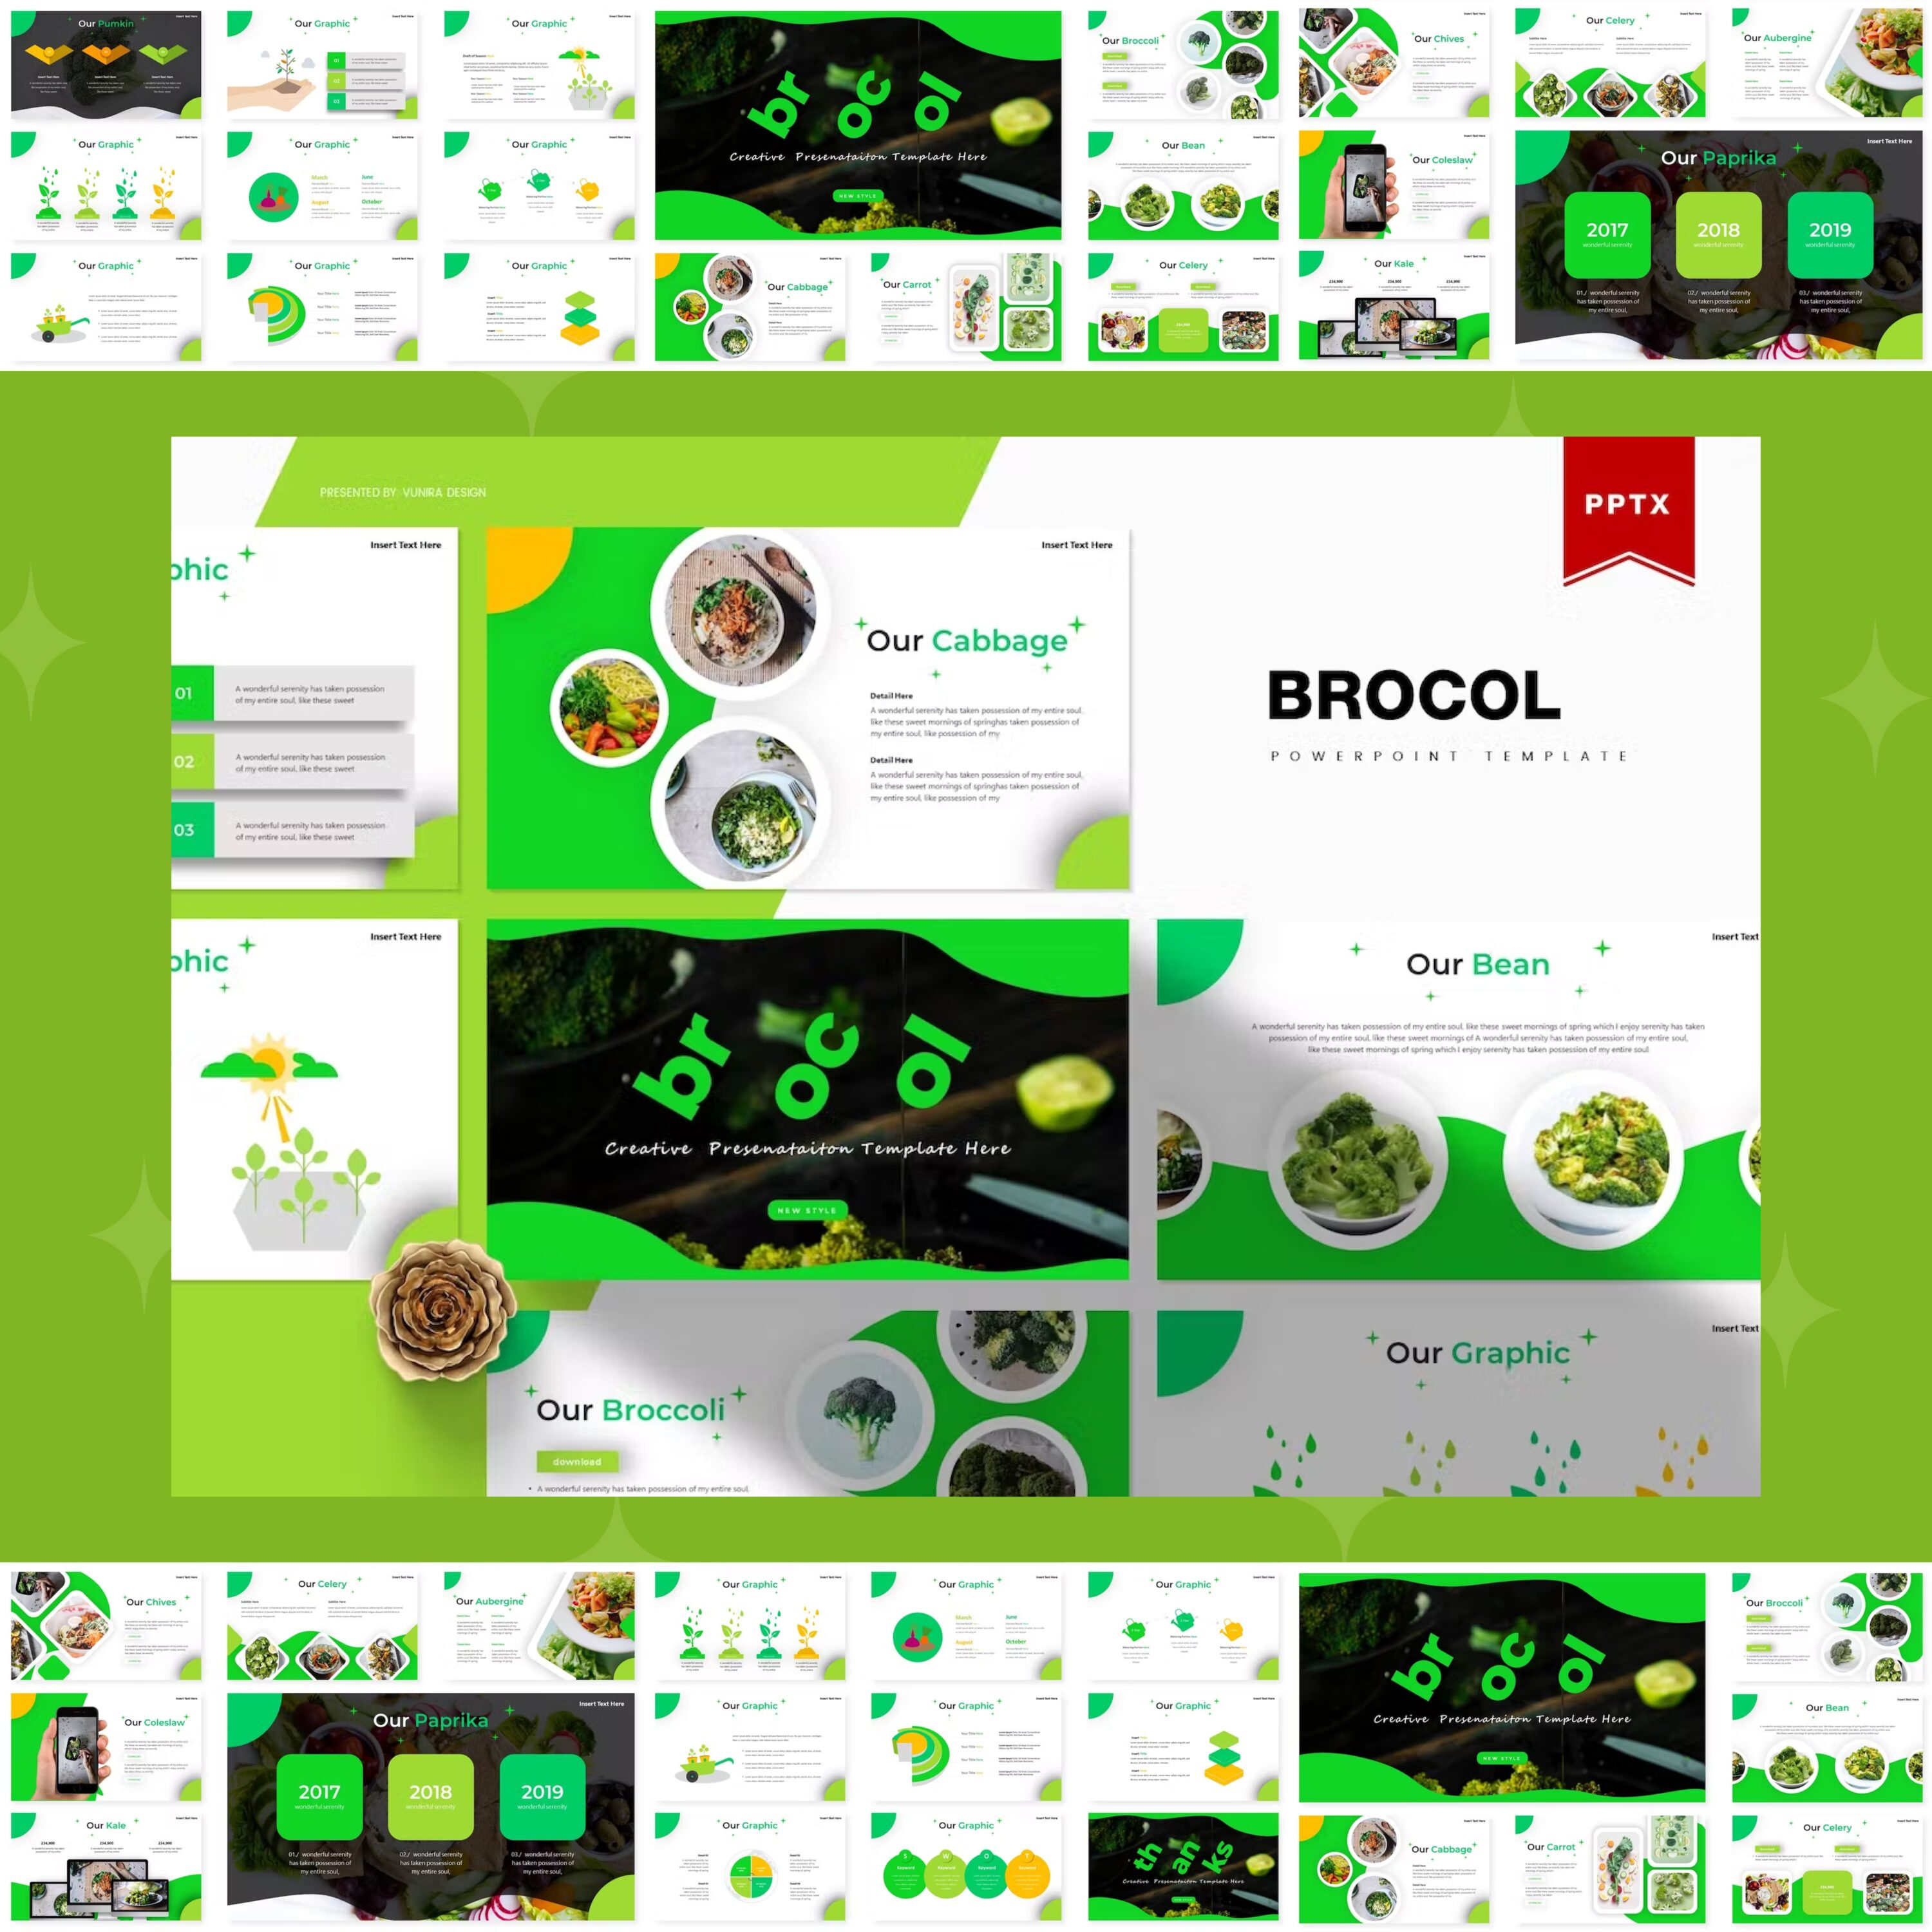 Brocol | Powerpoint Template from vunira.